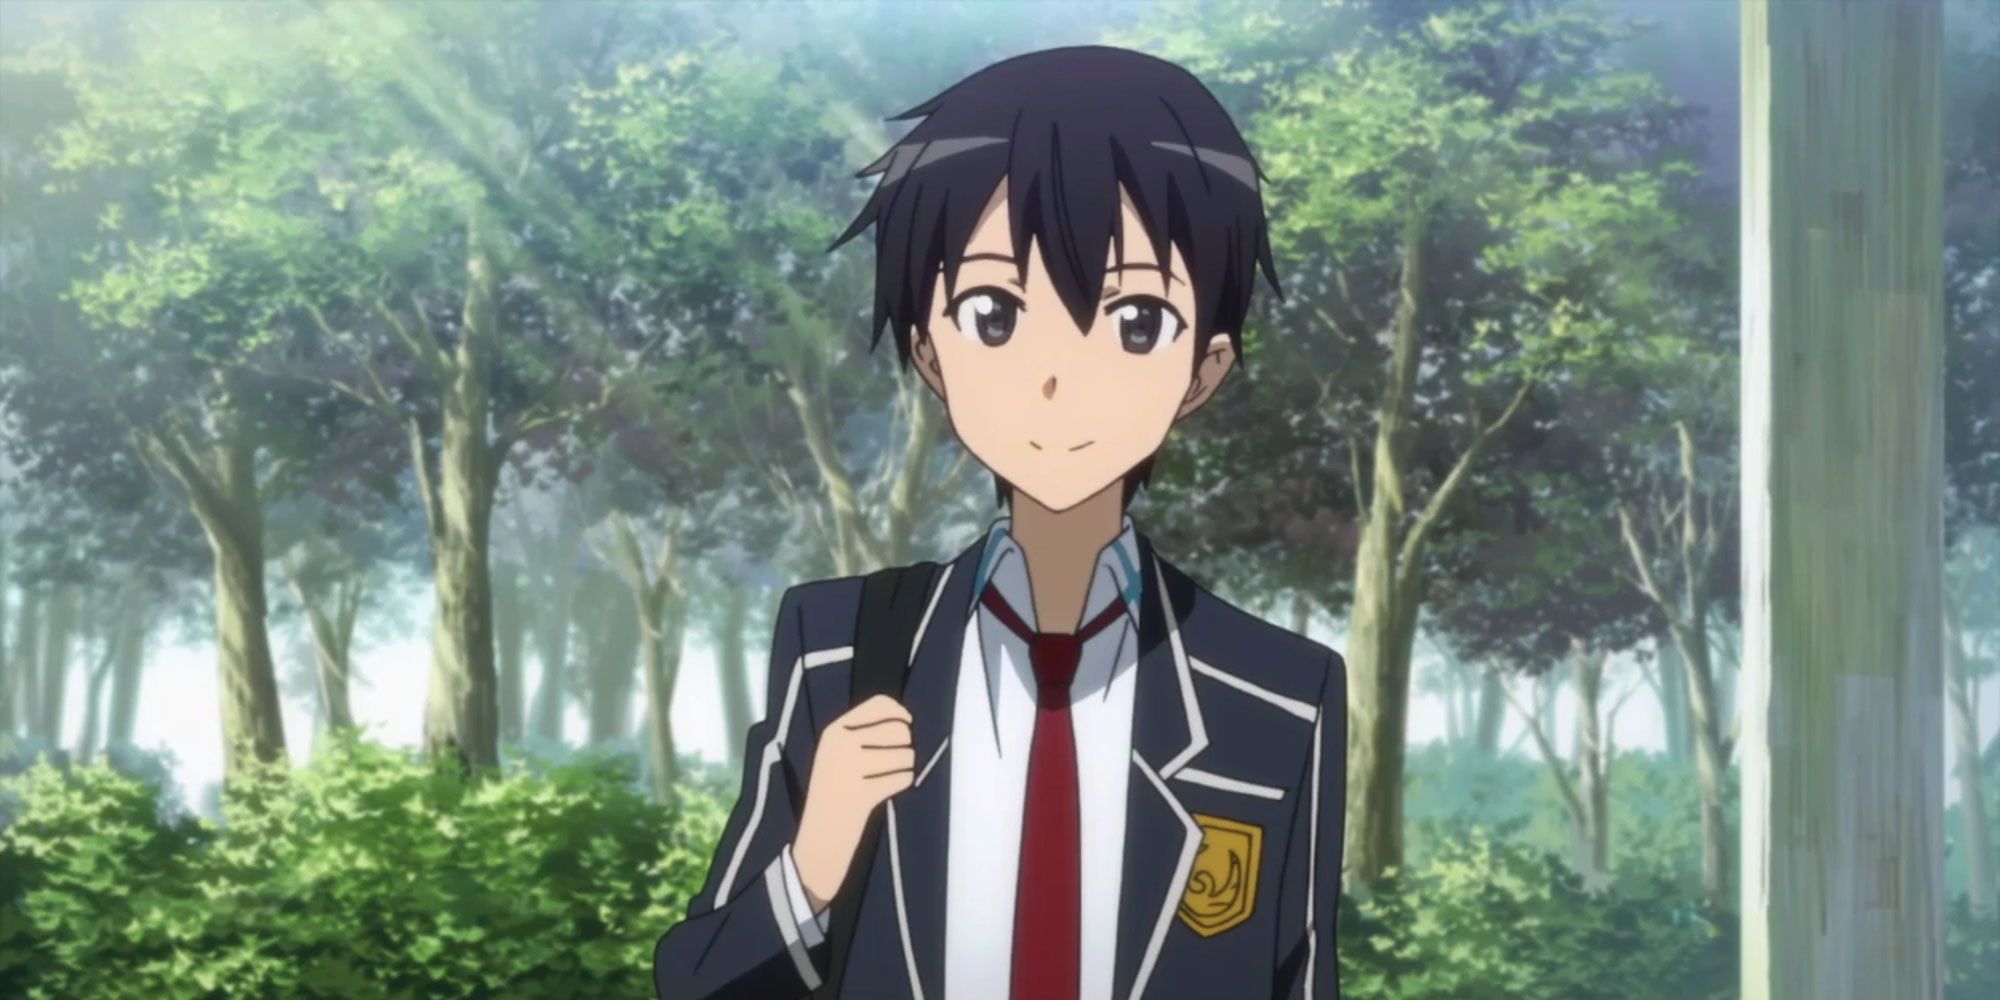 Kazuto in his school uniform in Sword Art Online